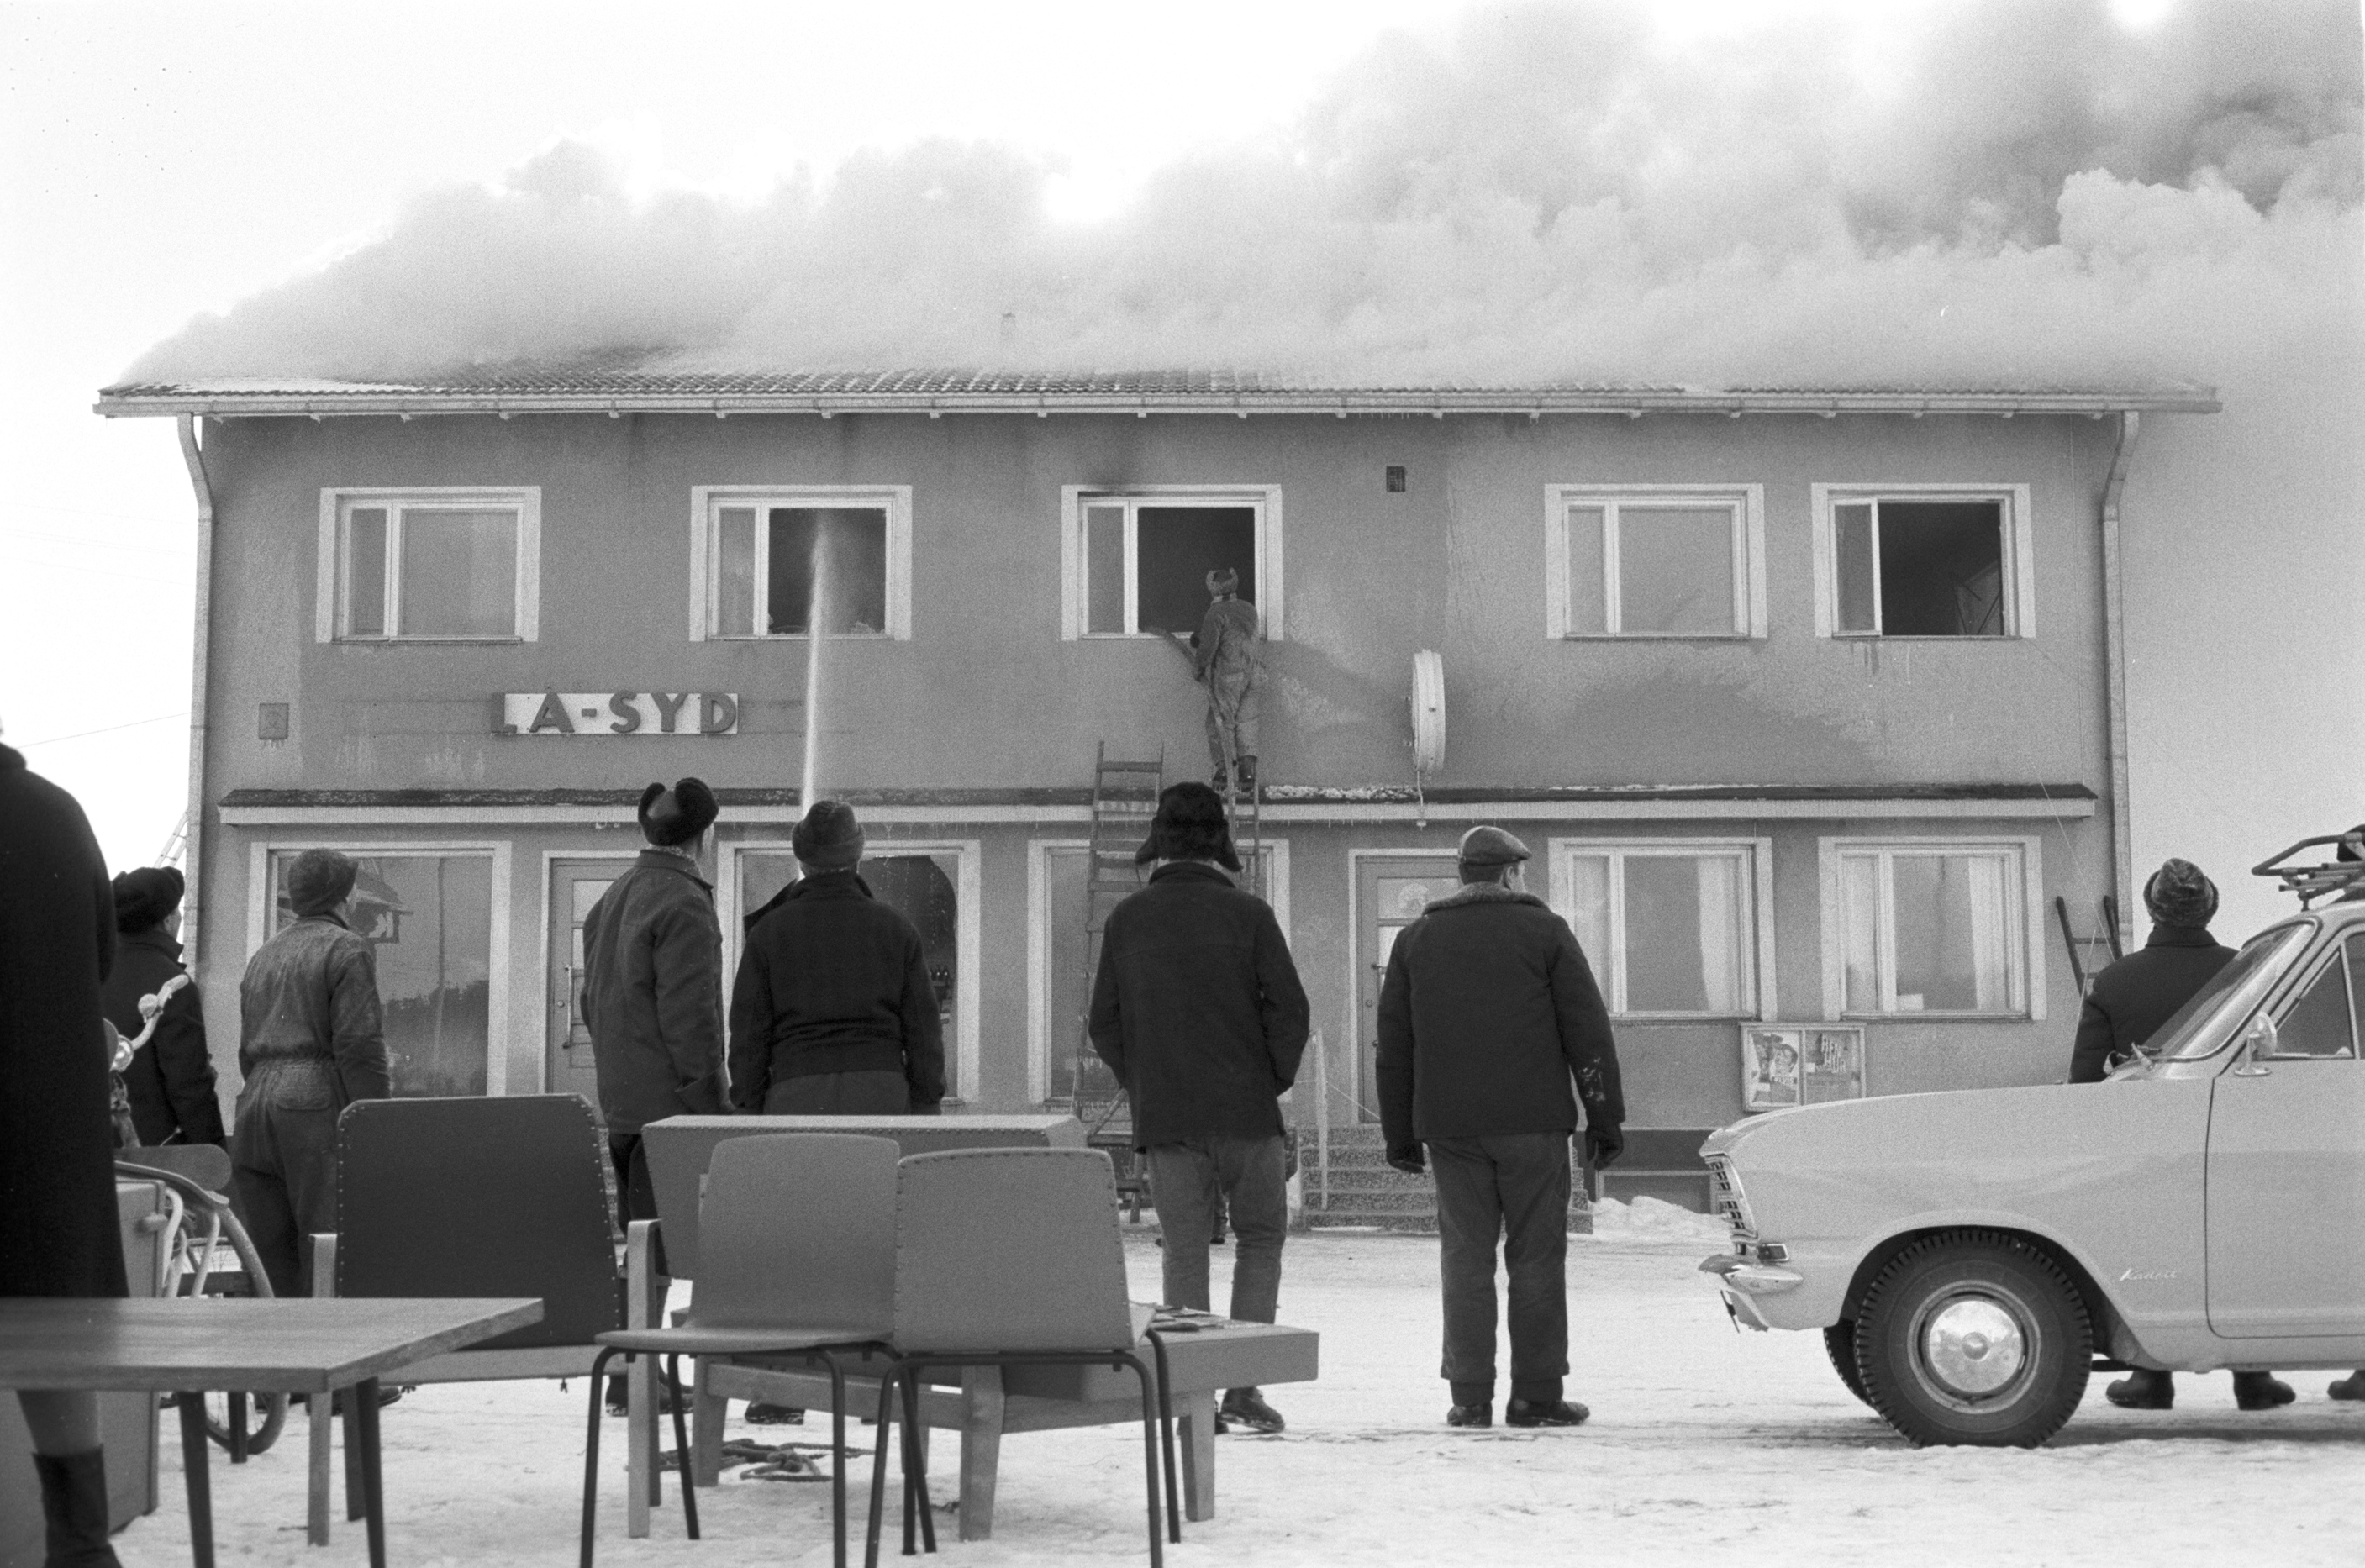 En del av inredningen från Sparbankens kontor kunde räddas medan själva byggnaden förstördes helt. Här står en del bybor och ser på då brandmännen försöker släcka elden.